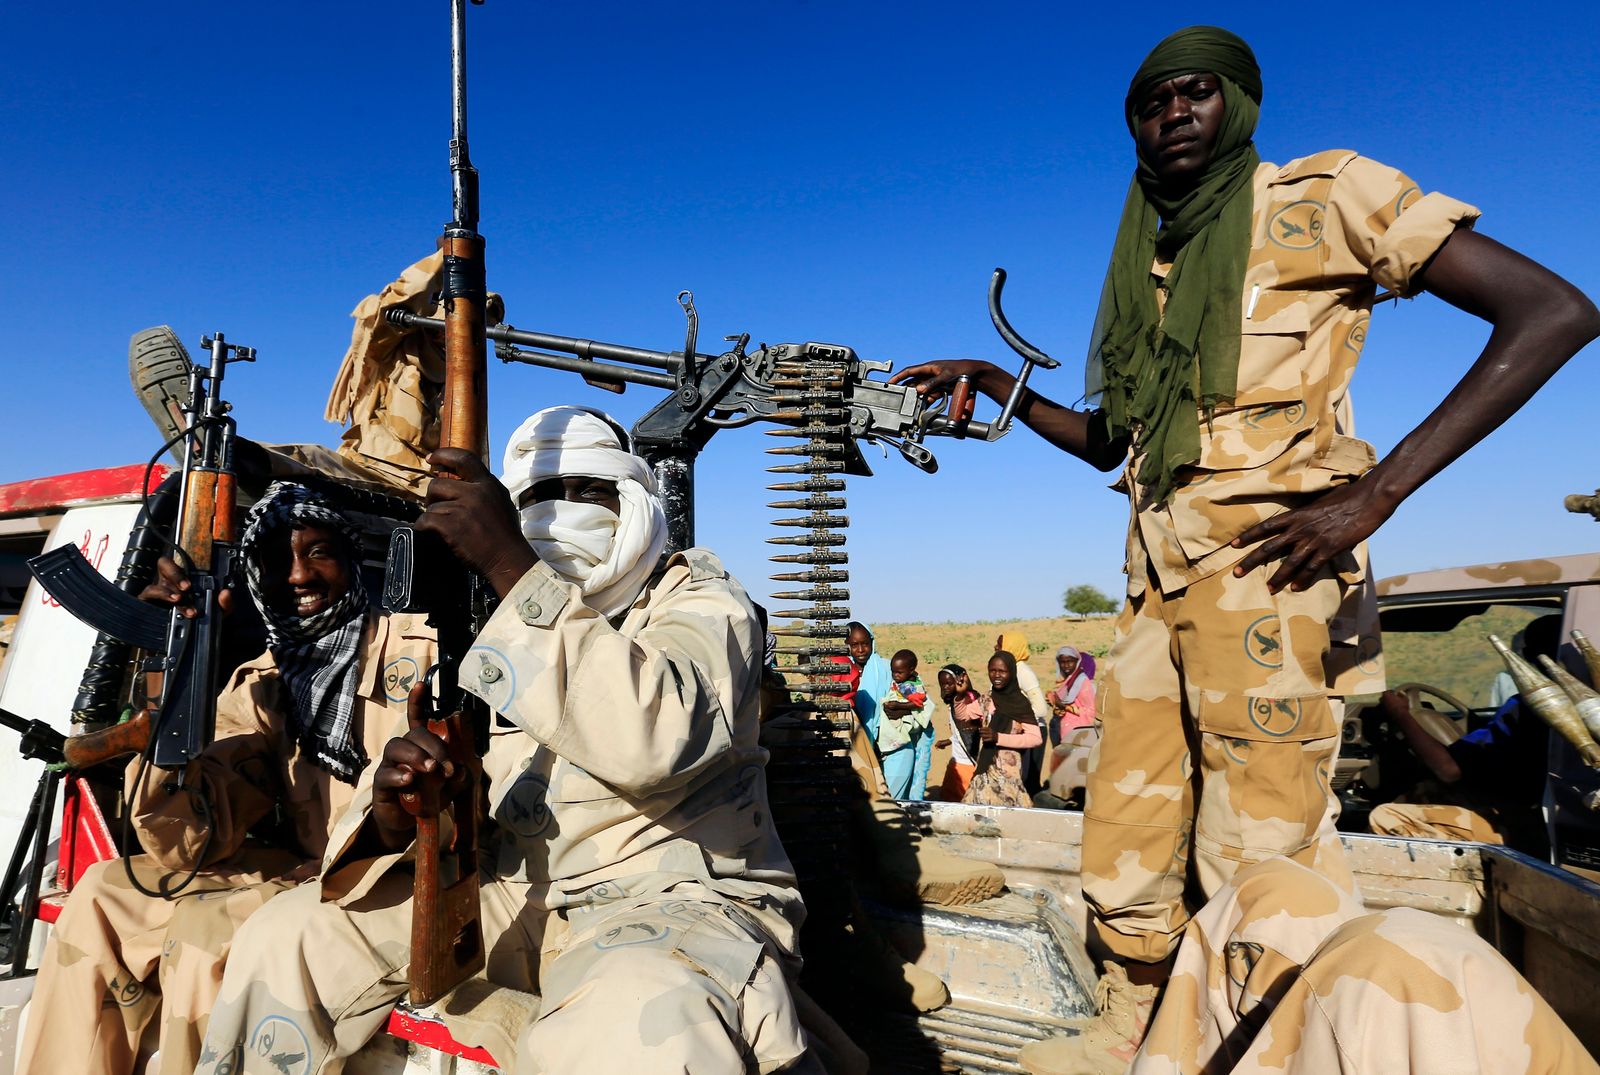 أفراد من الحركات المسلحة في دارفور  - REUTERS